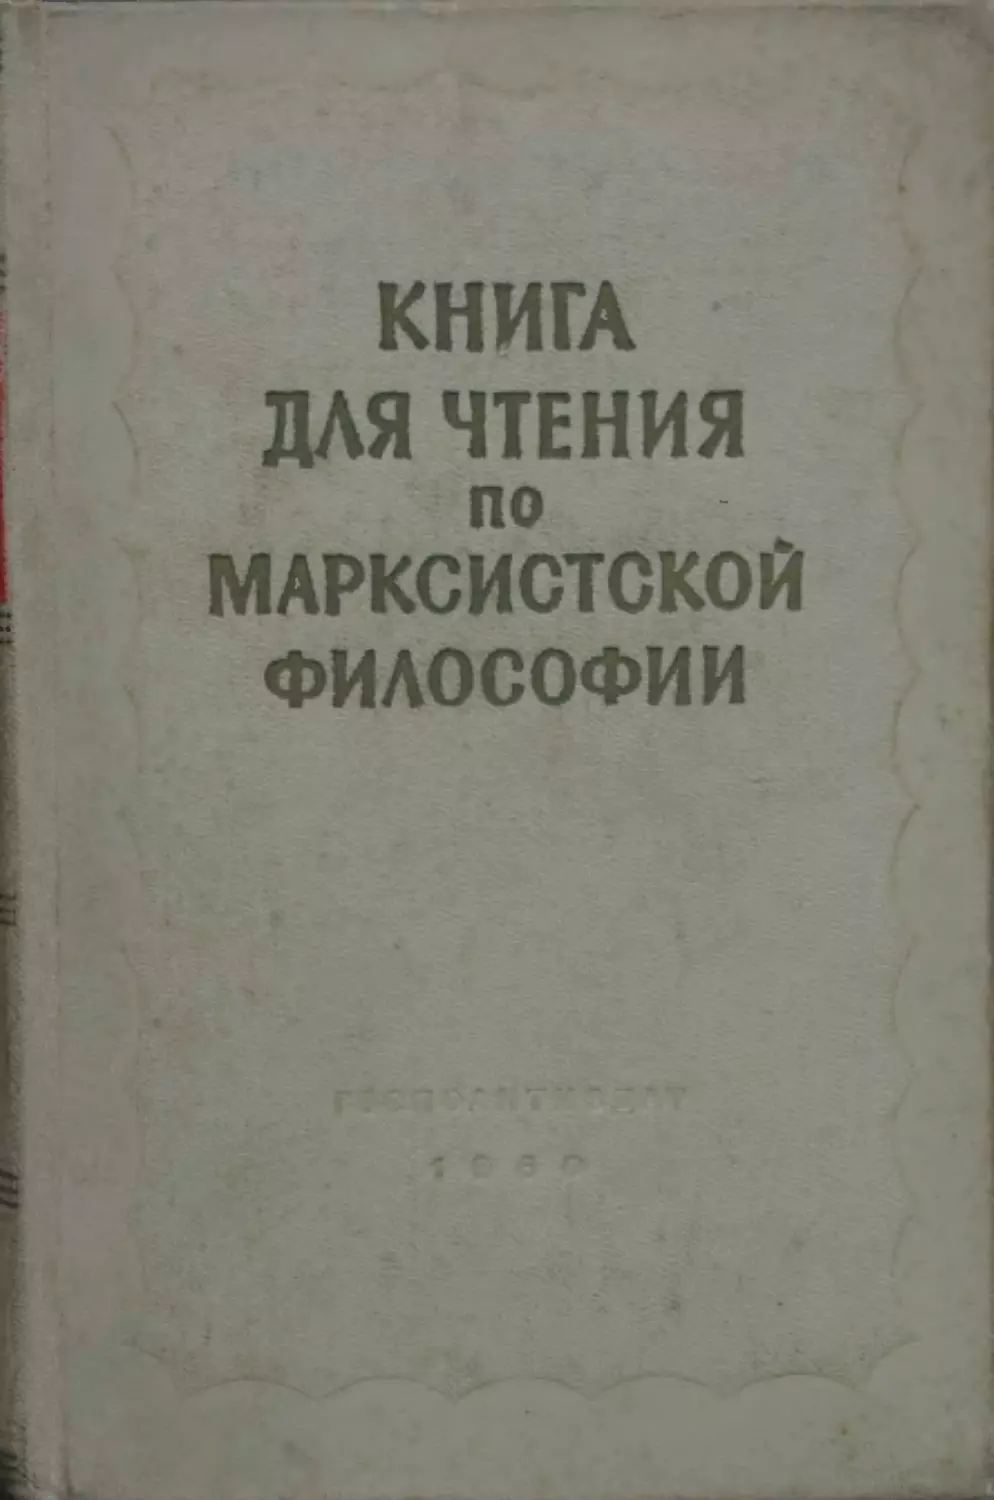 Книга для чтения по марксистской философии. Государственное издательство политической литературы. Москва, 1960